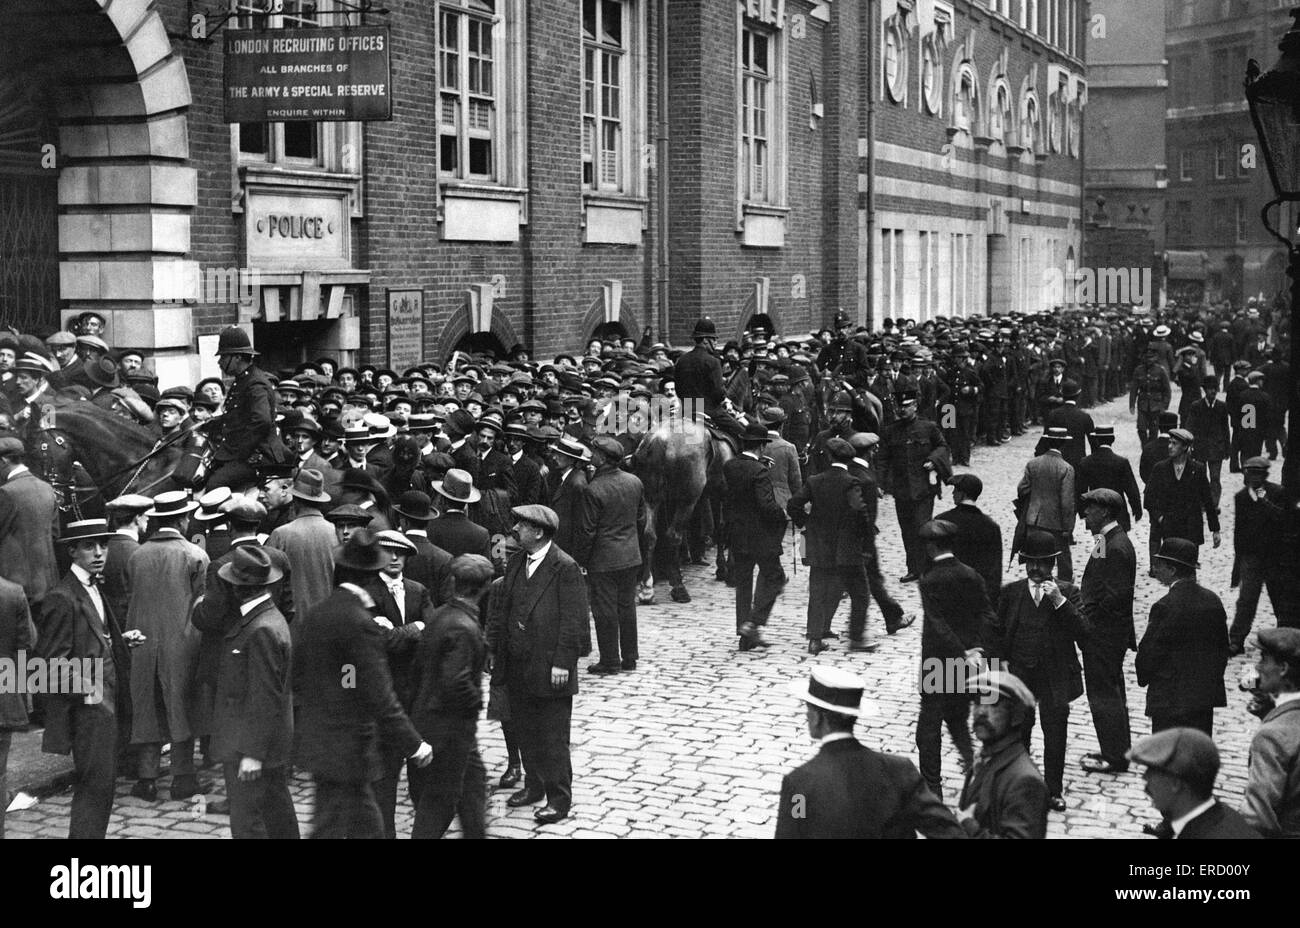 Personalbeschaffung von Scotland Yard, wäre London belagert von Rekruten in der ersten Woche des ersten Weltkrieges.  Die Massen waren so große berittene Polizei notwendig, die Menge in Schach zu halten. 6. August 1914 Stockfoto